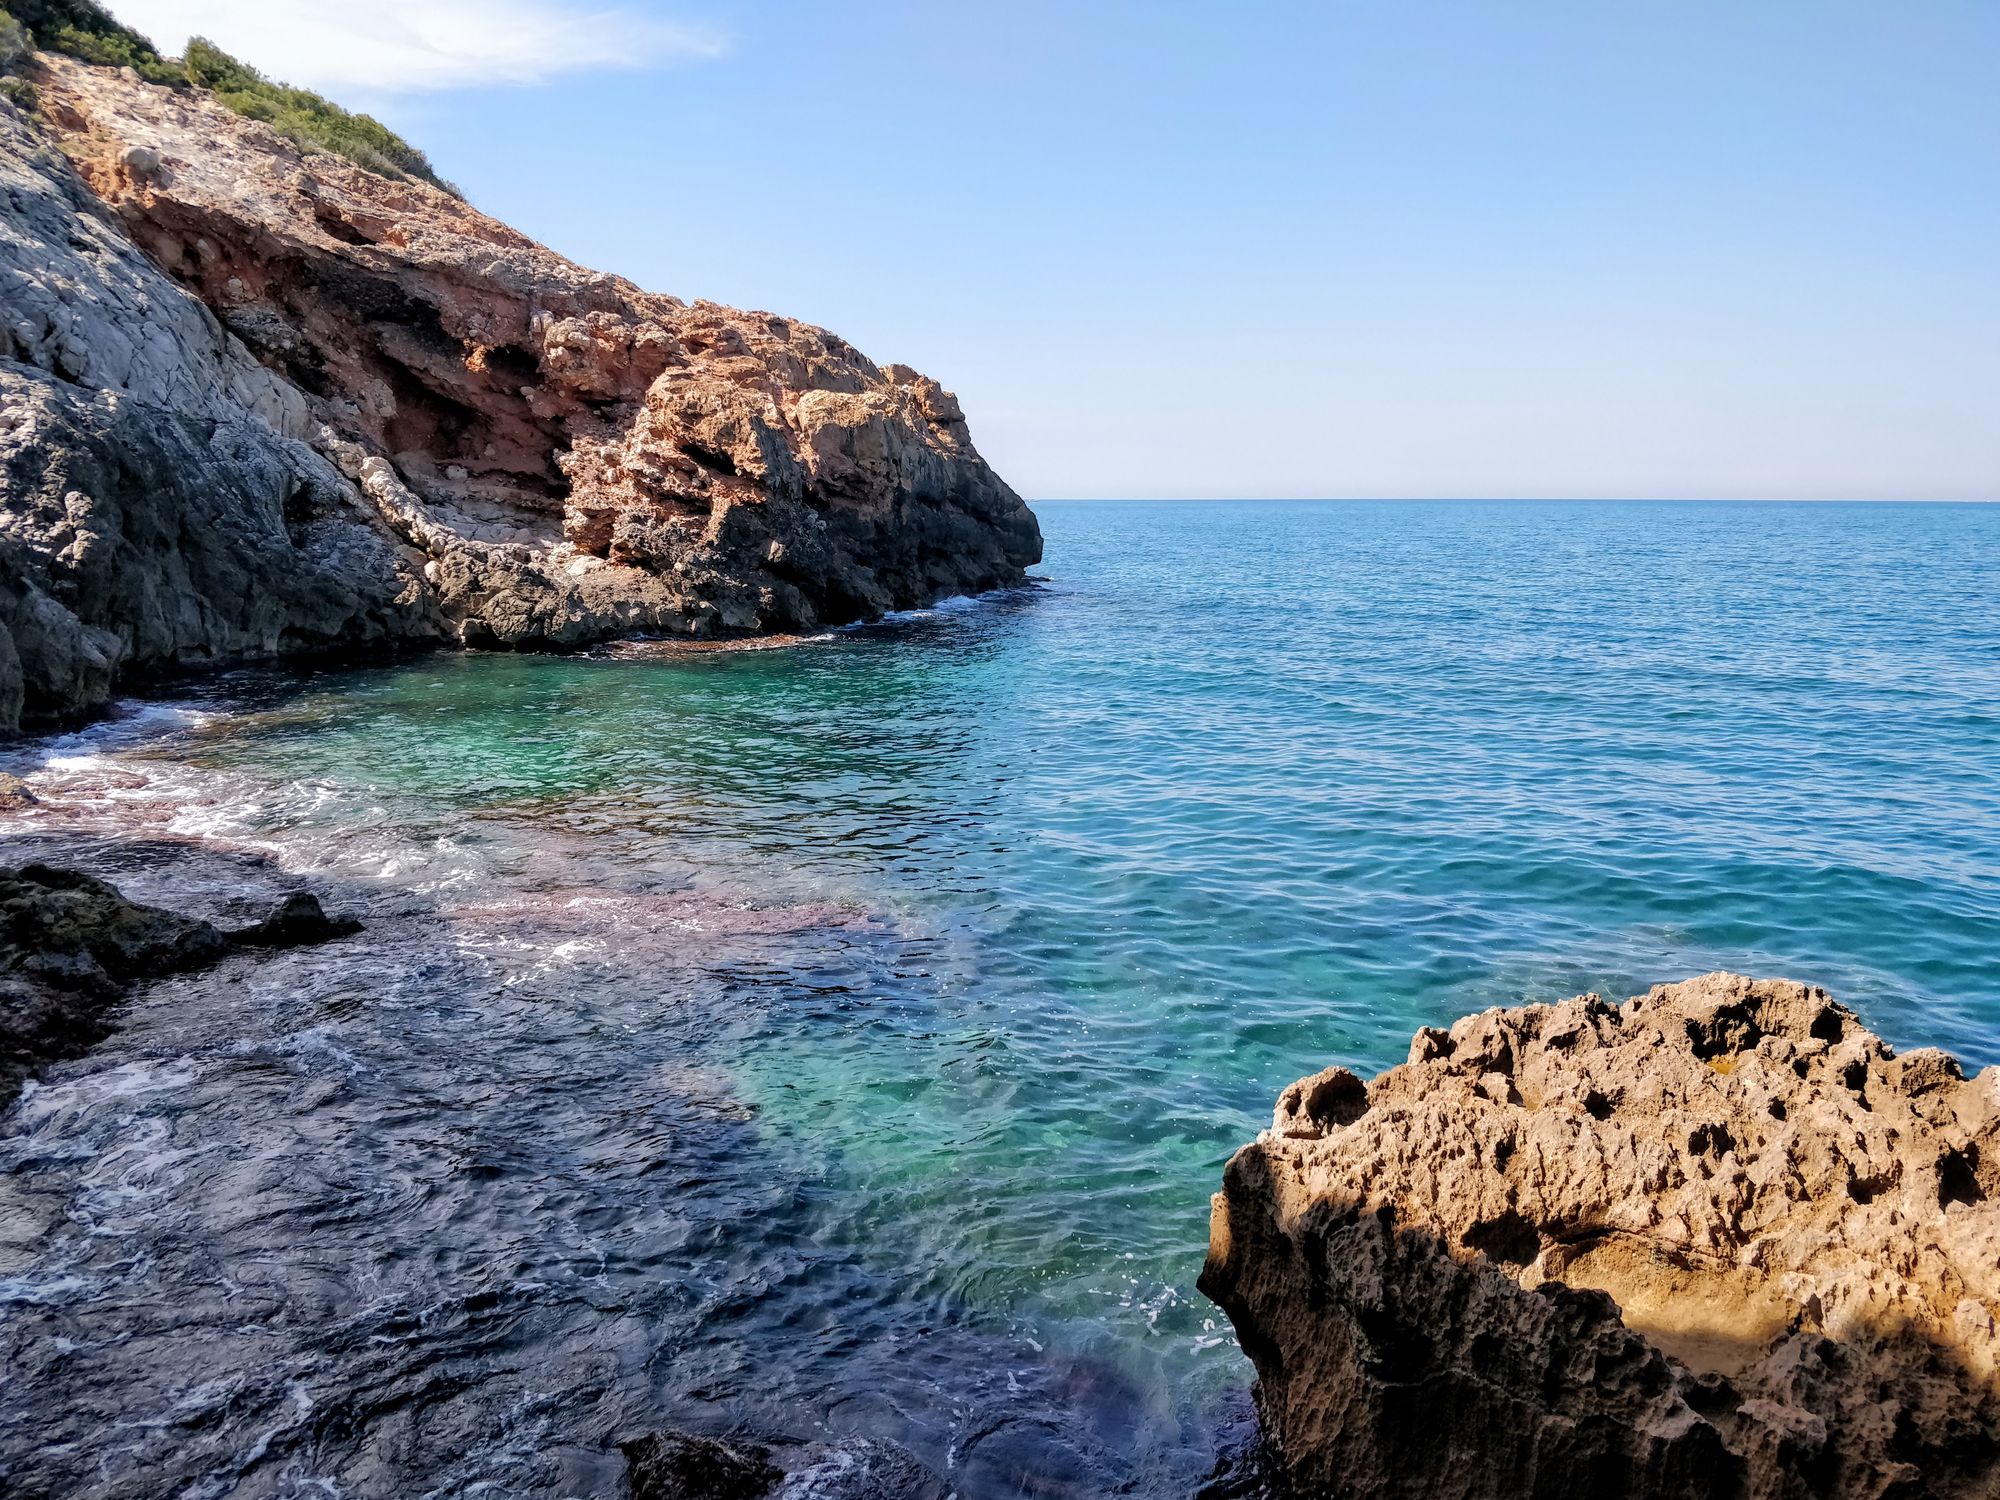 Cova Tallada - Peștera Sculptată de Marea Mediterană și de spanioli (Apr 2021)